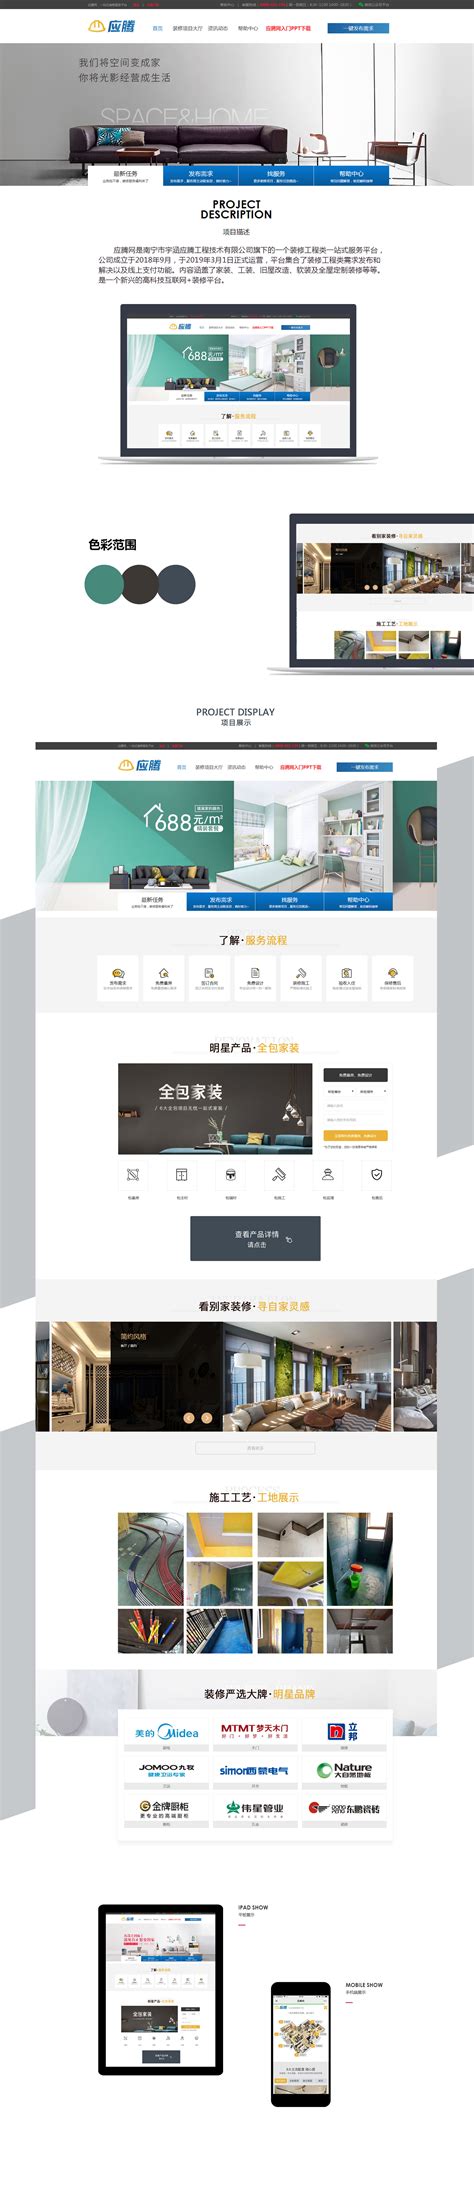 南宁网站建设服务平台